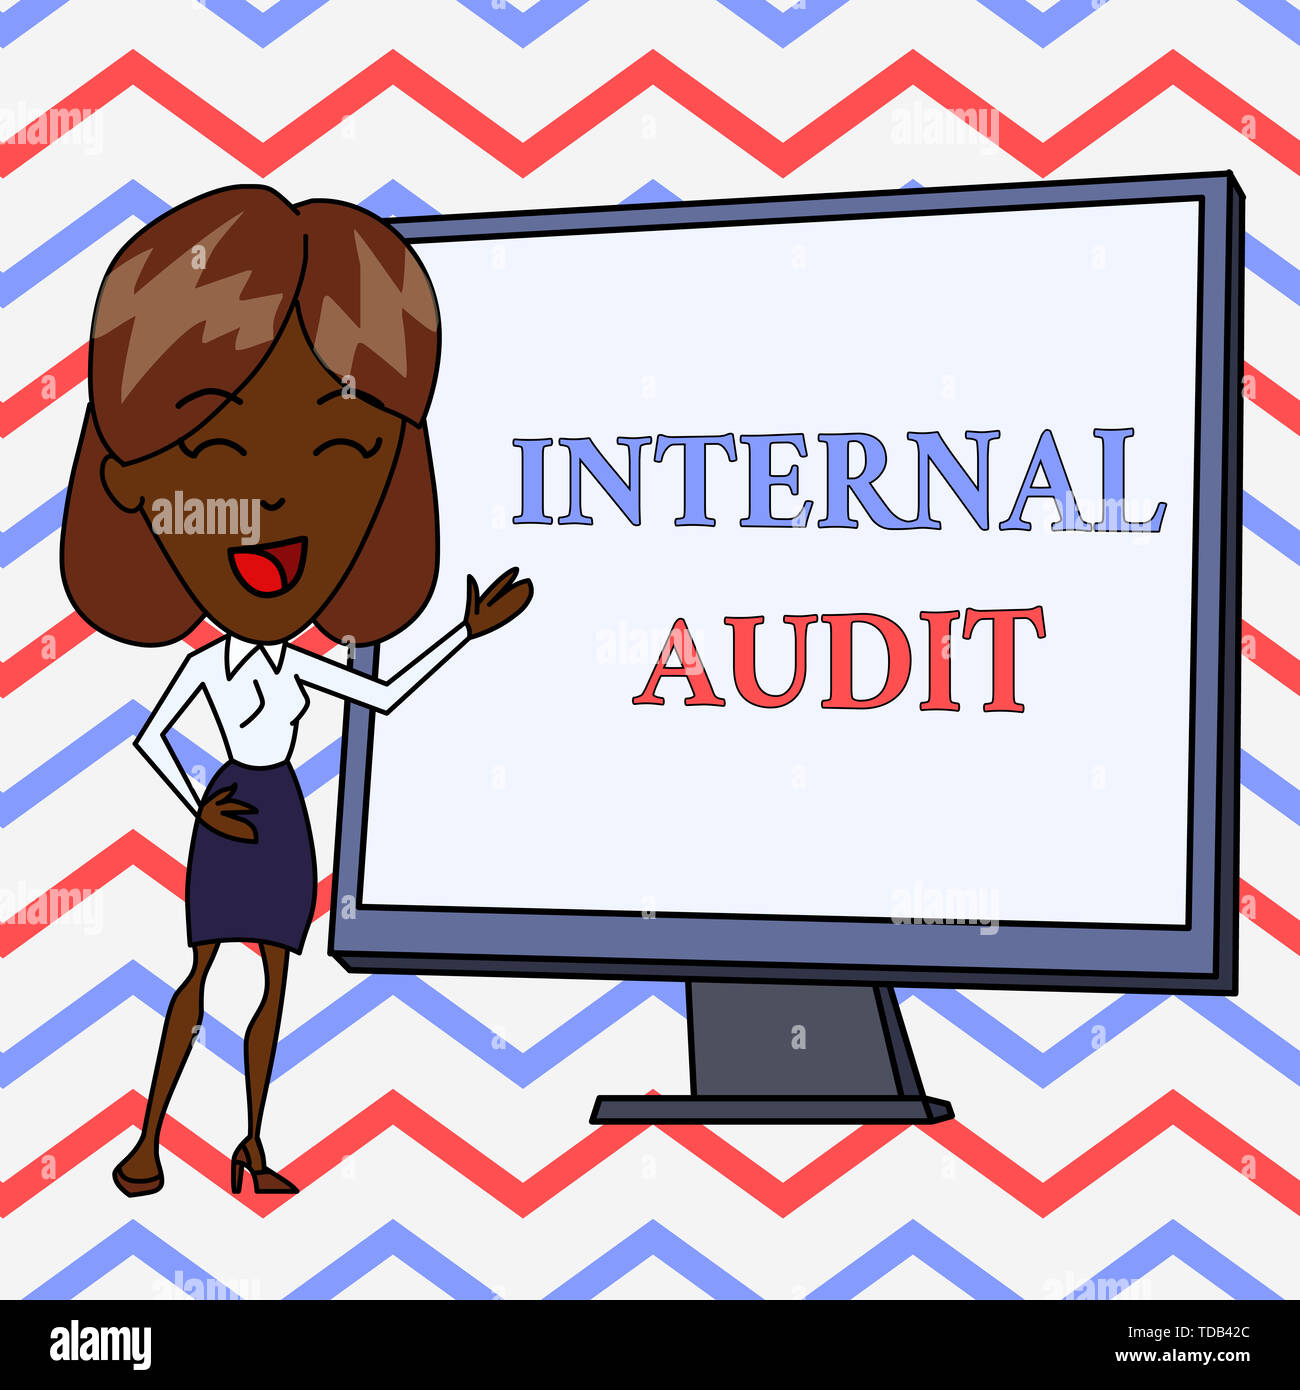 internal audit clipart